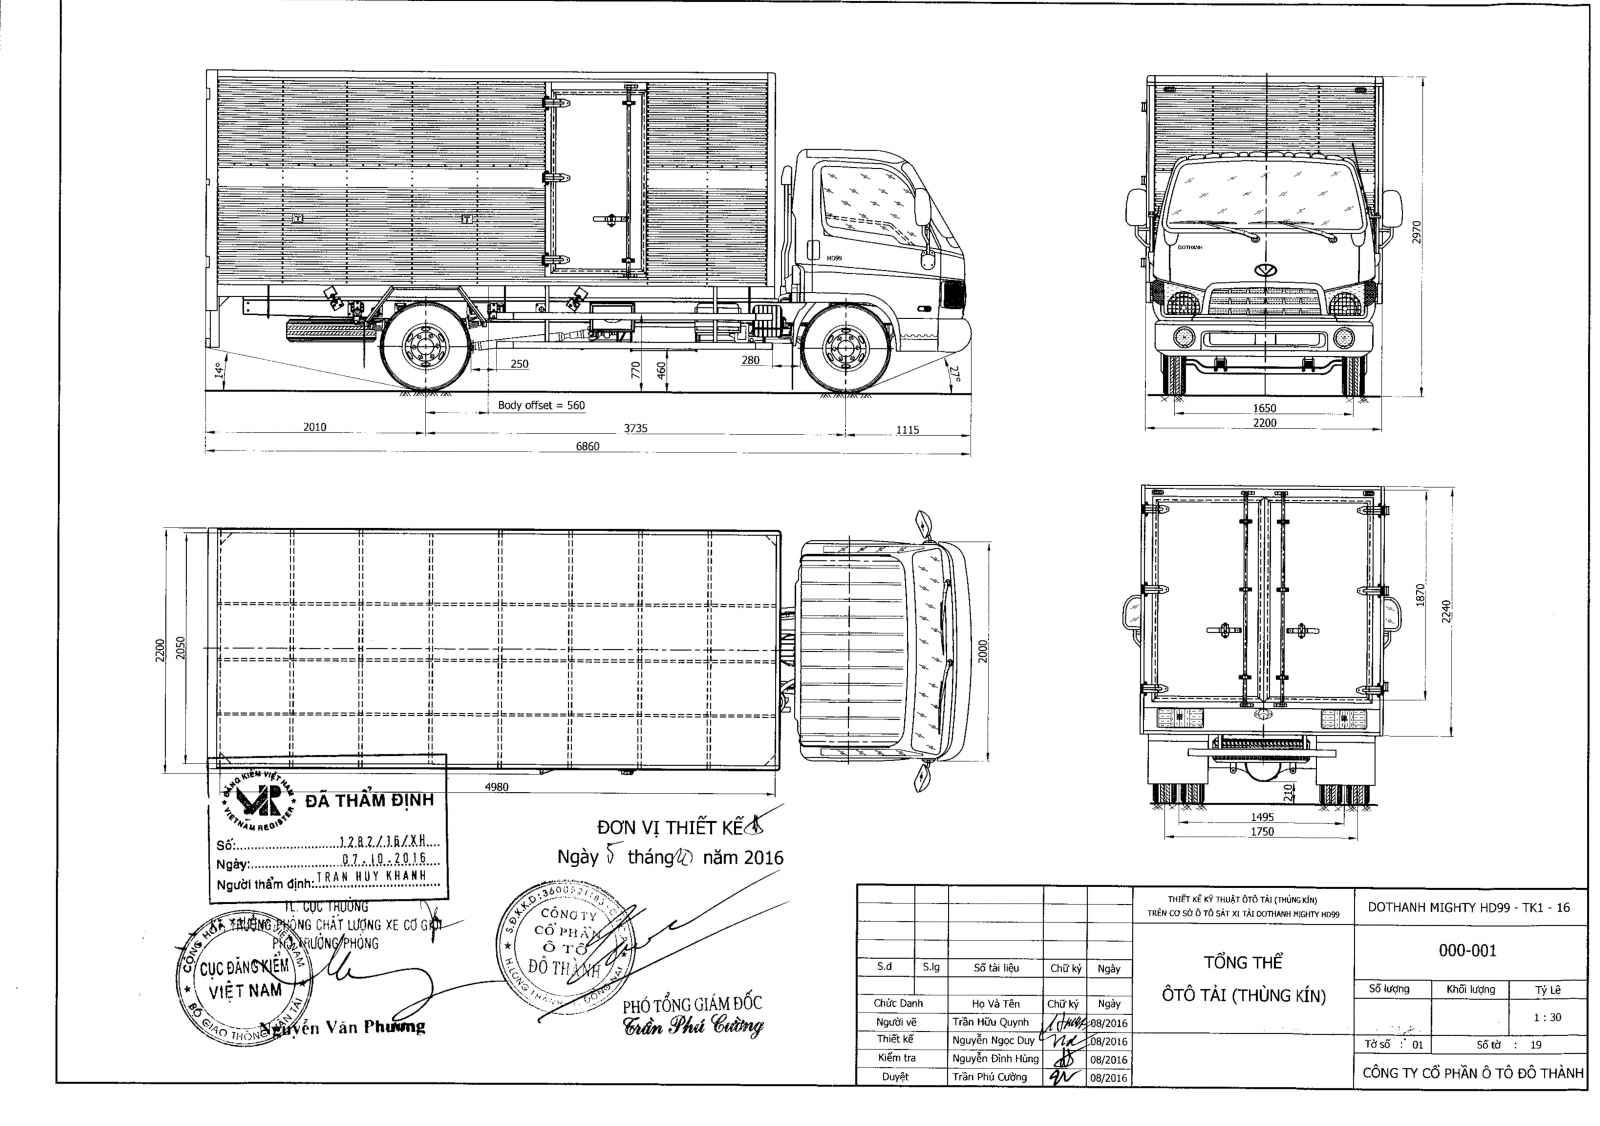 Hyundai 4 chân vẽ xe tải là một trong những sản phẩm được yêu thích và tin dùng trong ngành vận tải và chuyên chở hàng hóa. Hãy xem hình ảnh để cảm nhận sự tinh tế trong thiết kế và chất lượng đáng tin cậy của chiếc xe này.